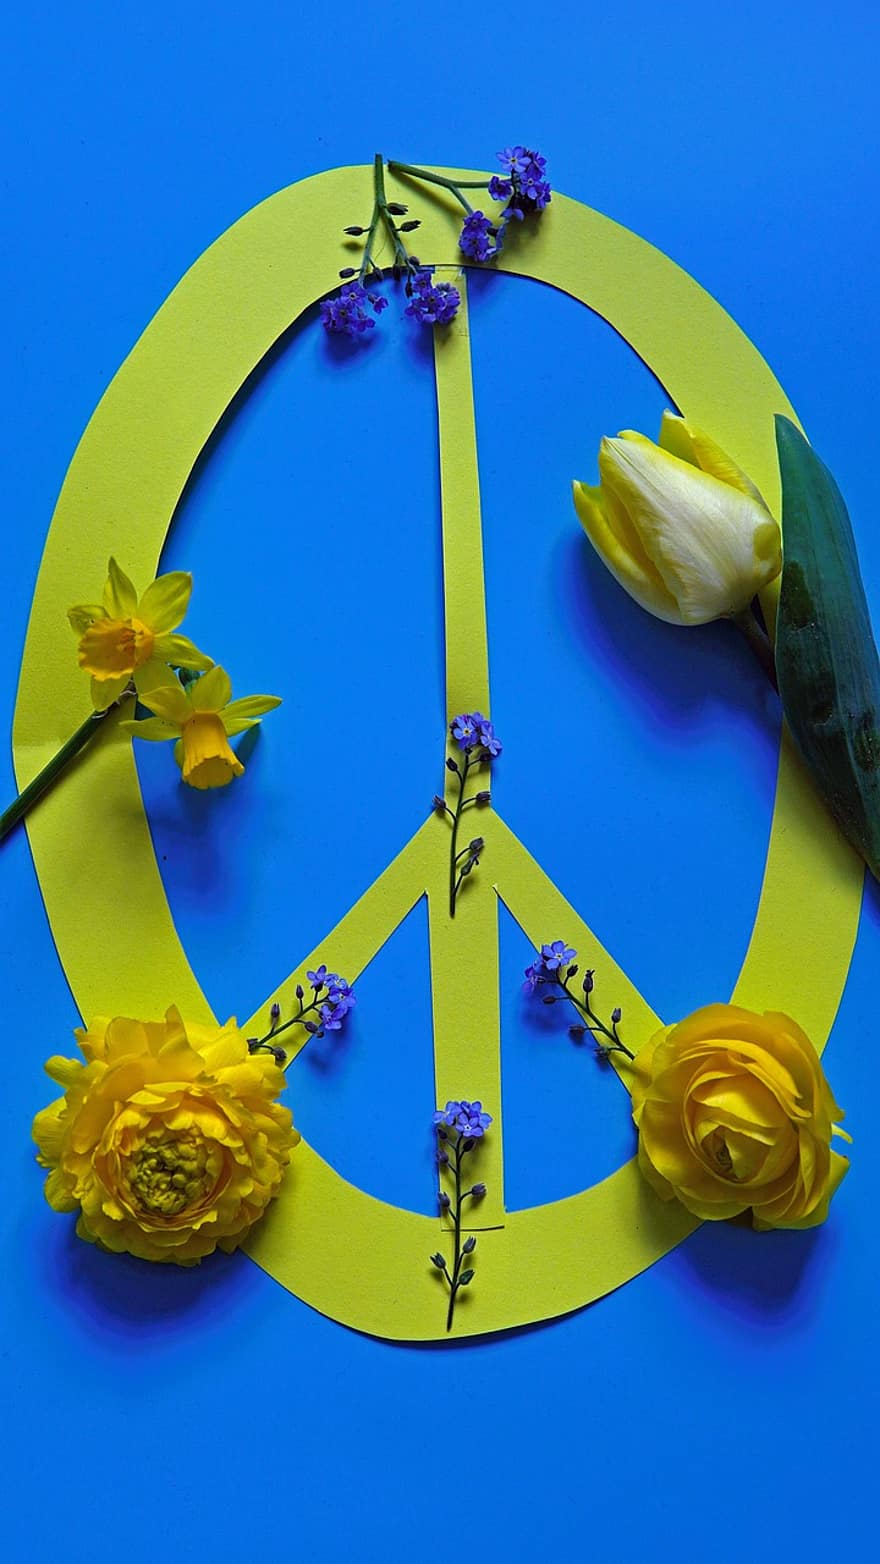 평화, 평화의 상징, 우크라이나 국가 색, 우크라이나, 우크라이나 색상, 평화의 표식, 세계 평화, 노란 꽃, 꽃, 잎, 노랑